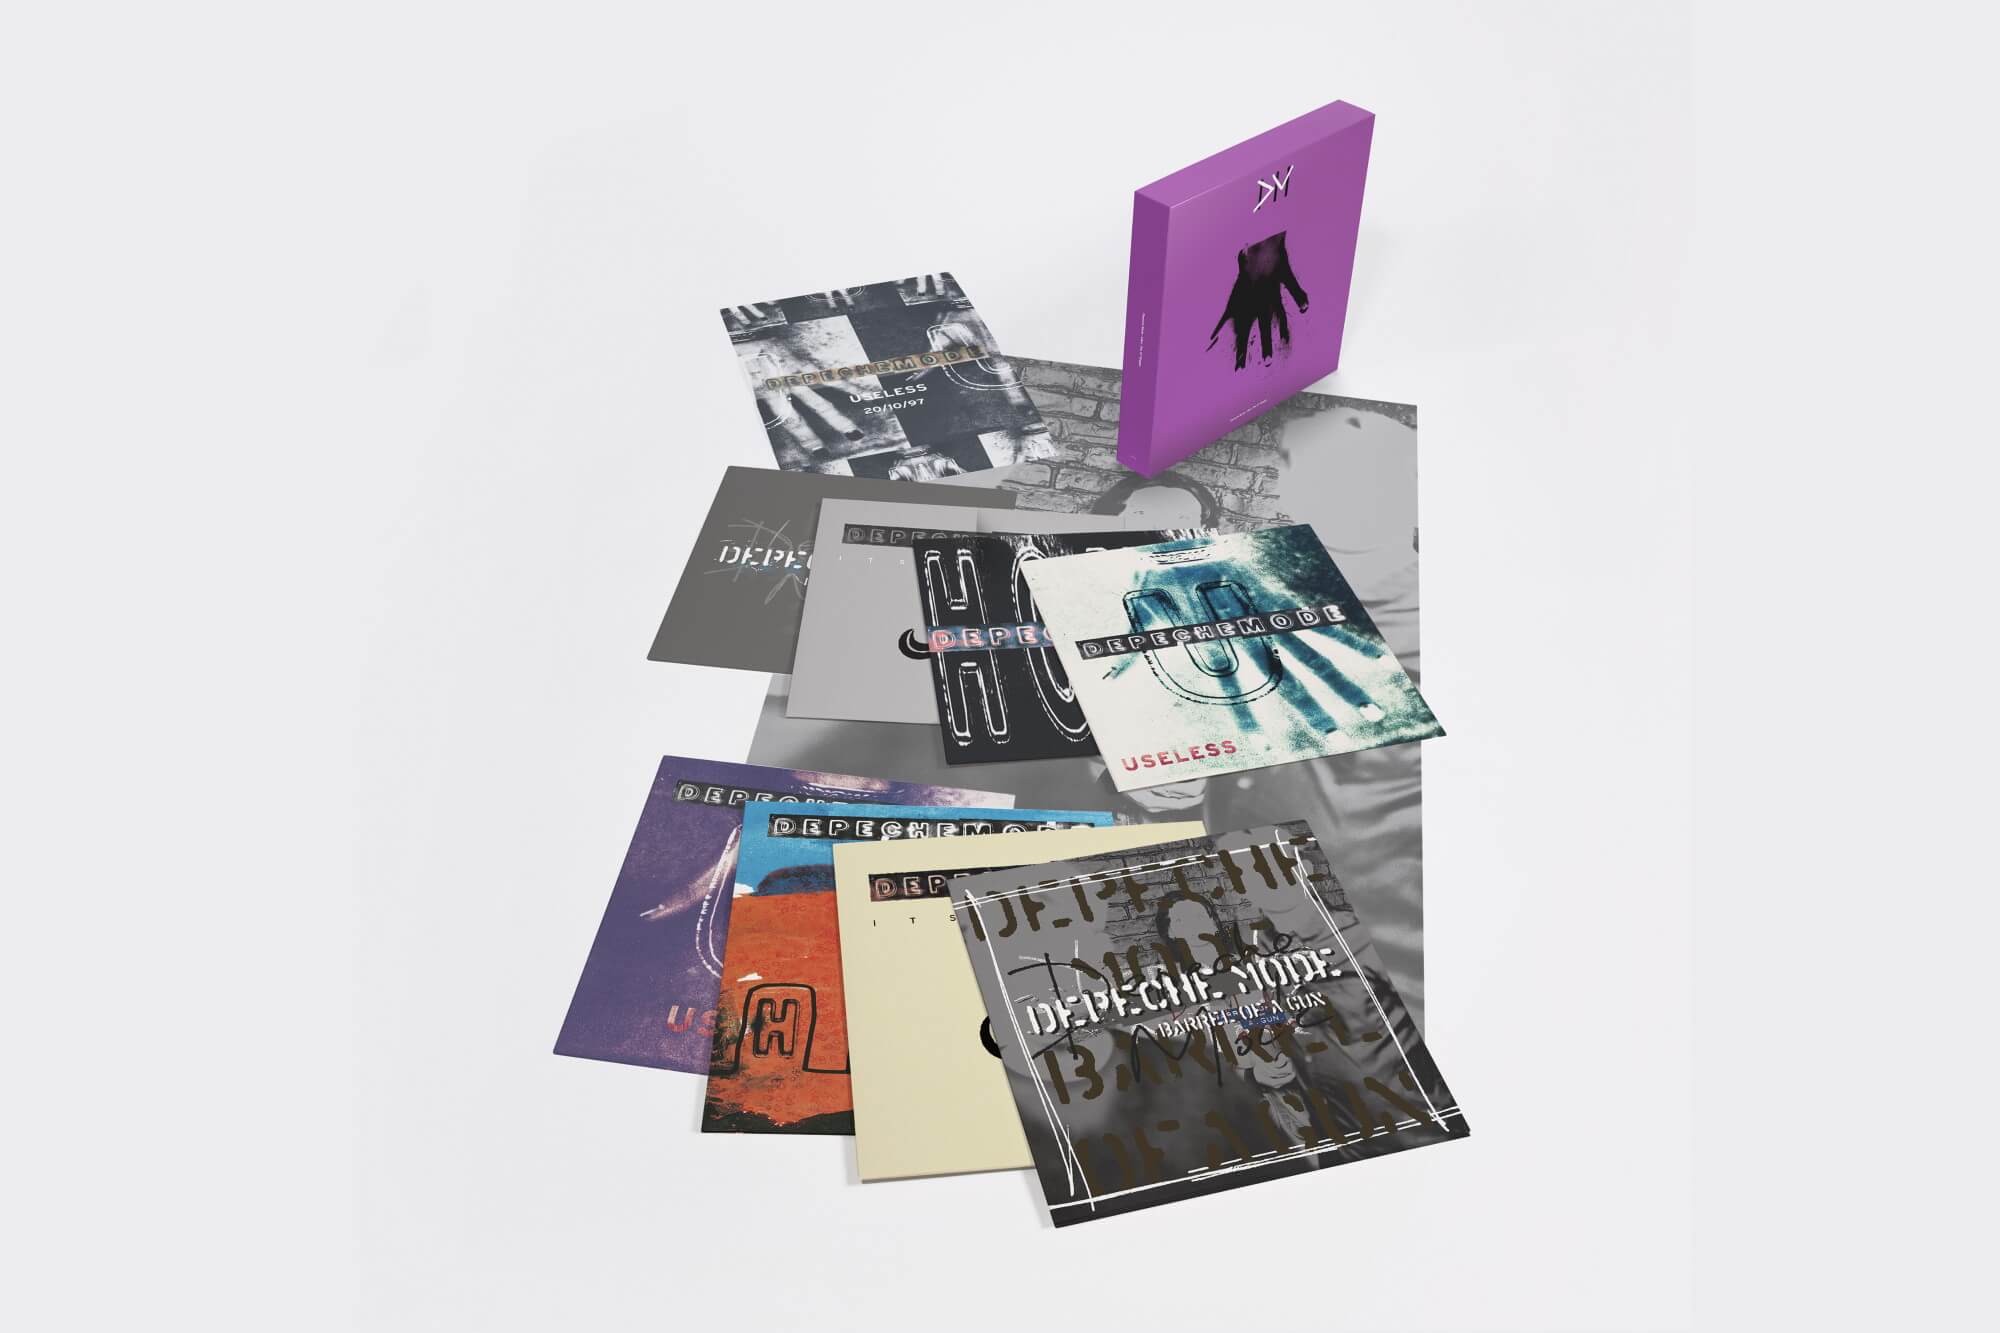 Depeche Mode 12" vinyl singles - now time for «Ultra»